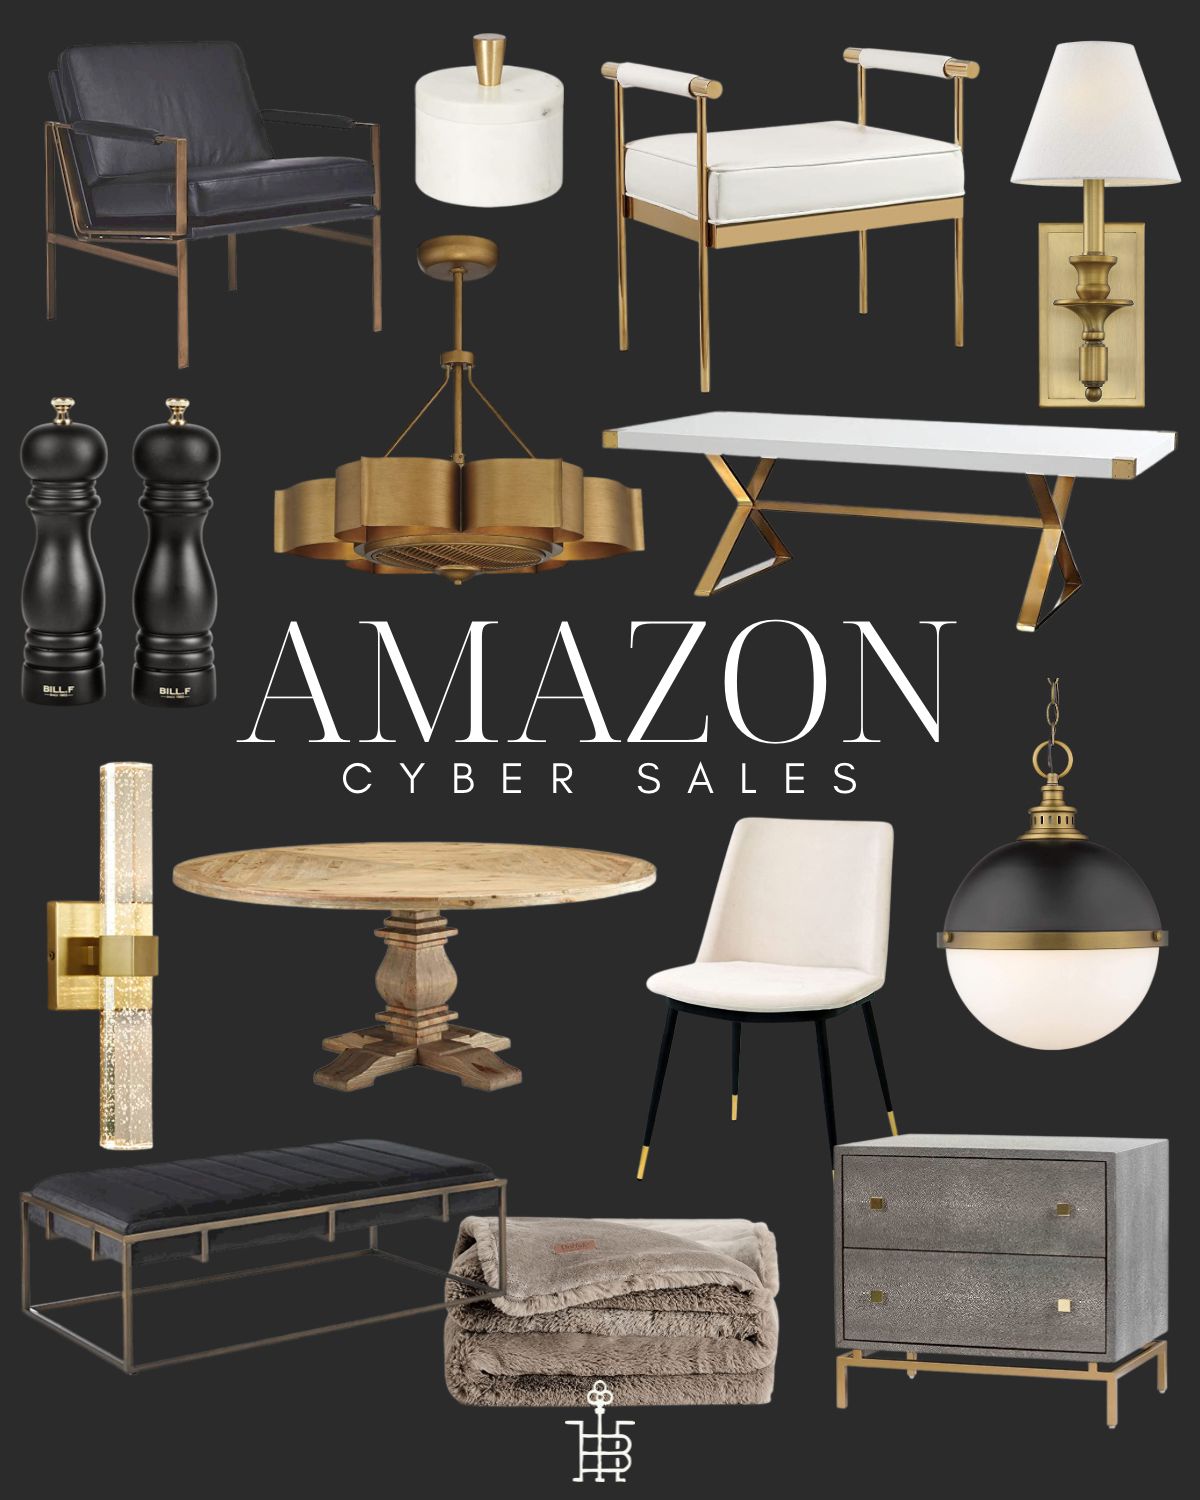 The Broadmoor House's Amazon Page | Amazon (US)